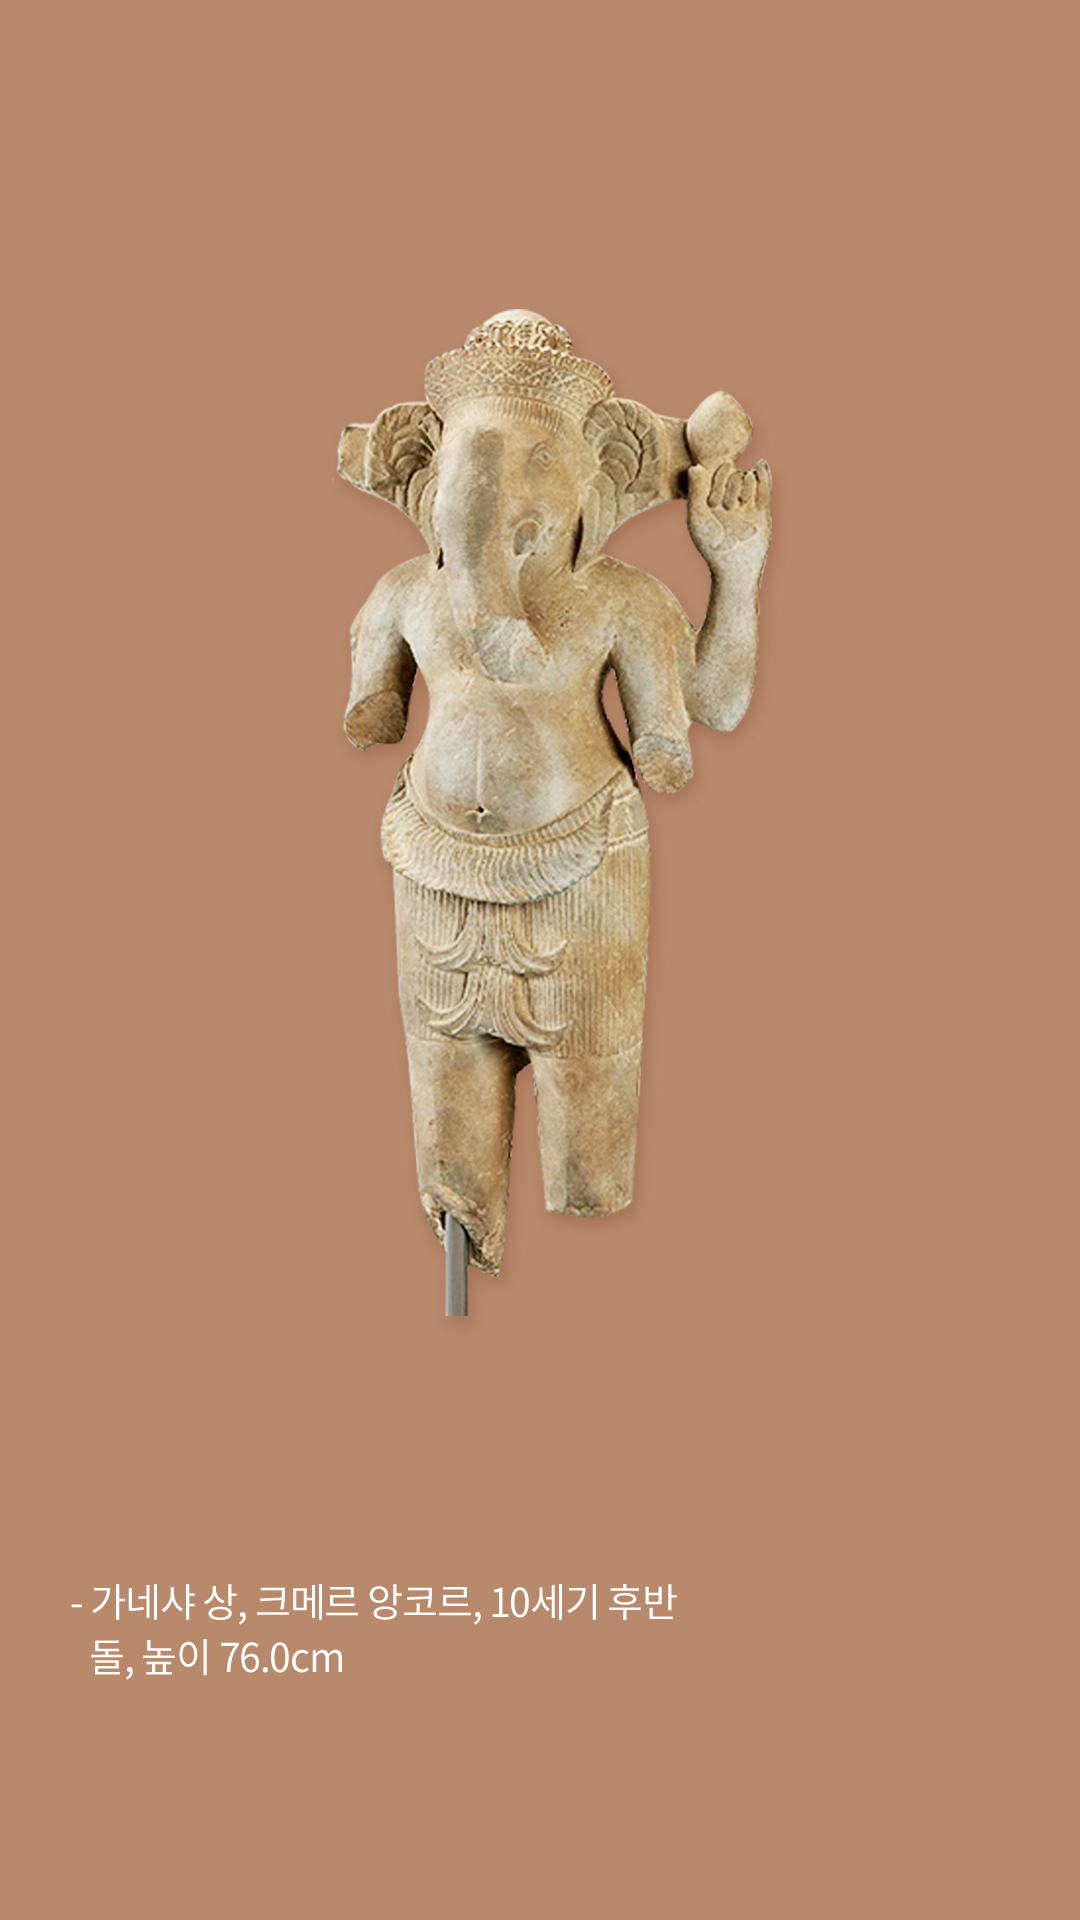 가네샤 상, 크메르 앙코르, 10세기 후반, 돌, 높이 76cm